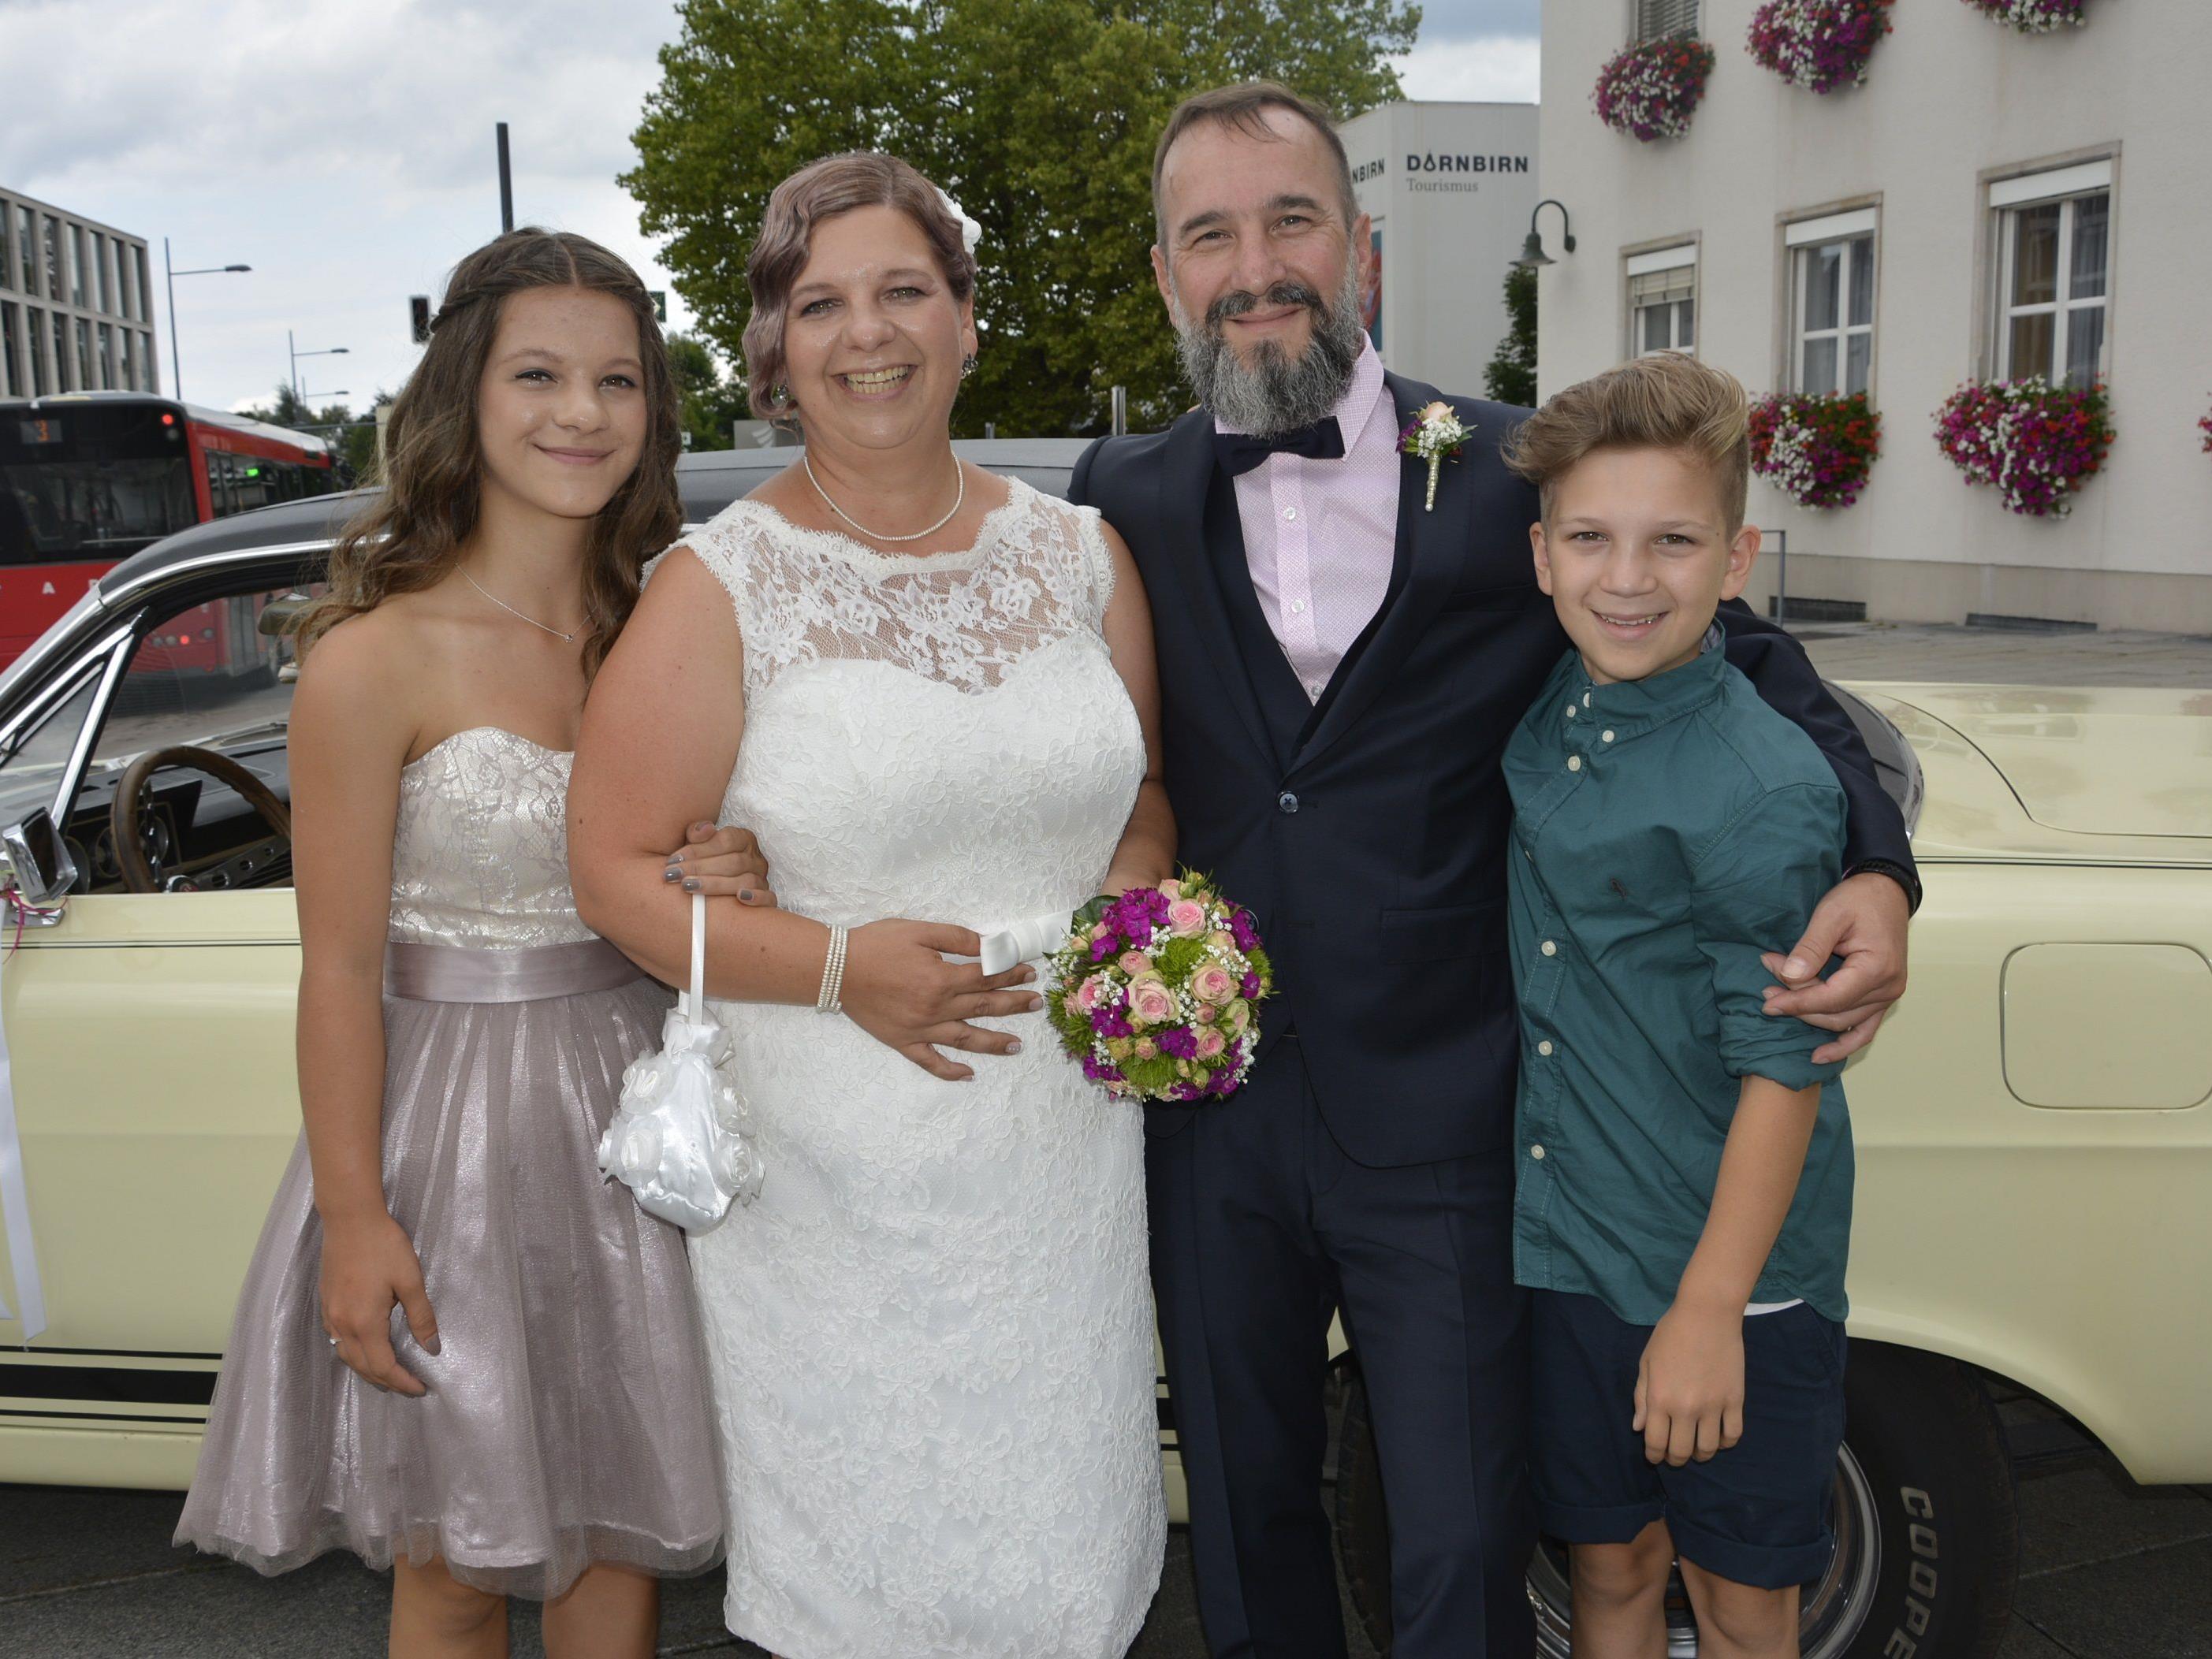 Das Brautpaar mit Jana und Jonas bei der standesamtlichen Trauung in Dornbirn.